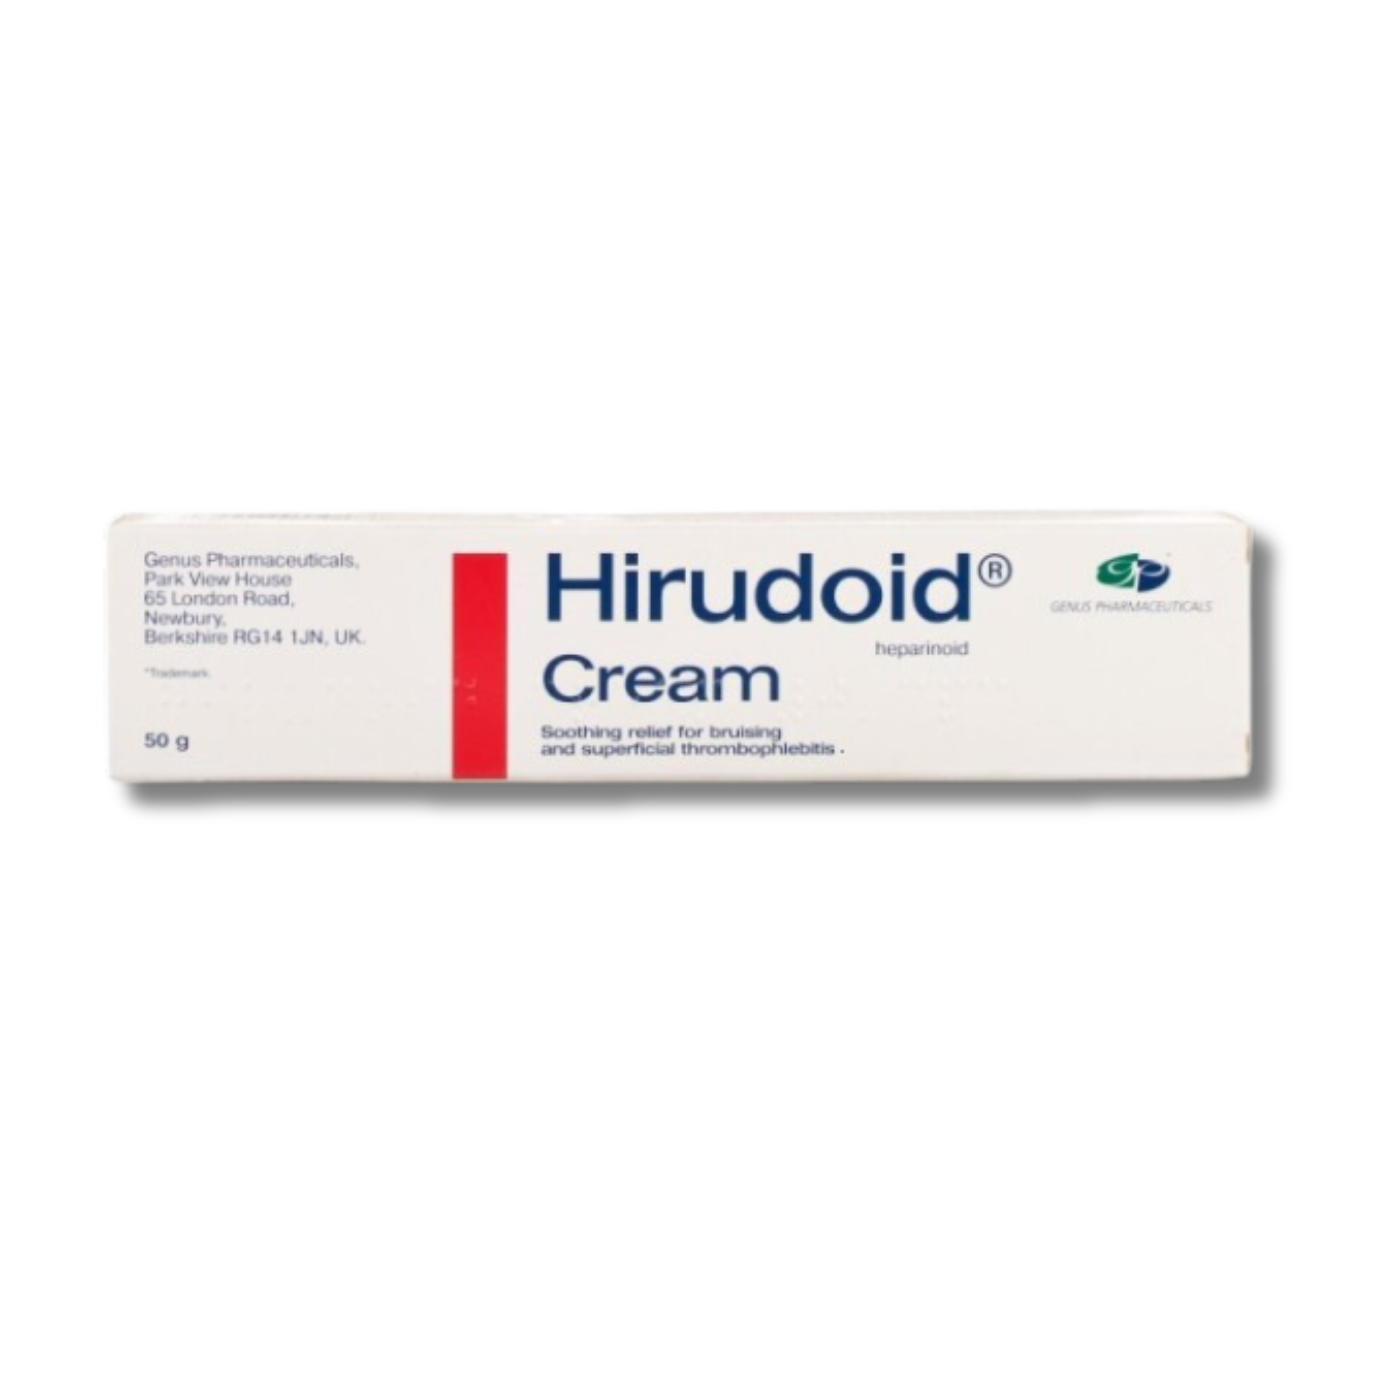 Hirudoid cream - 50g